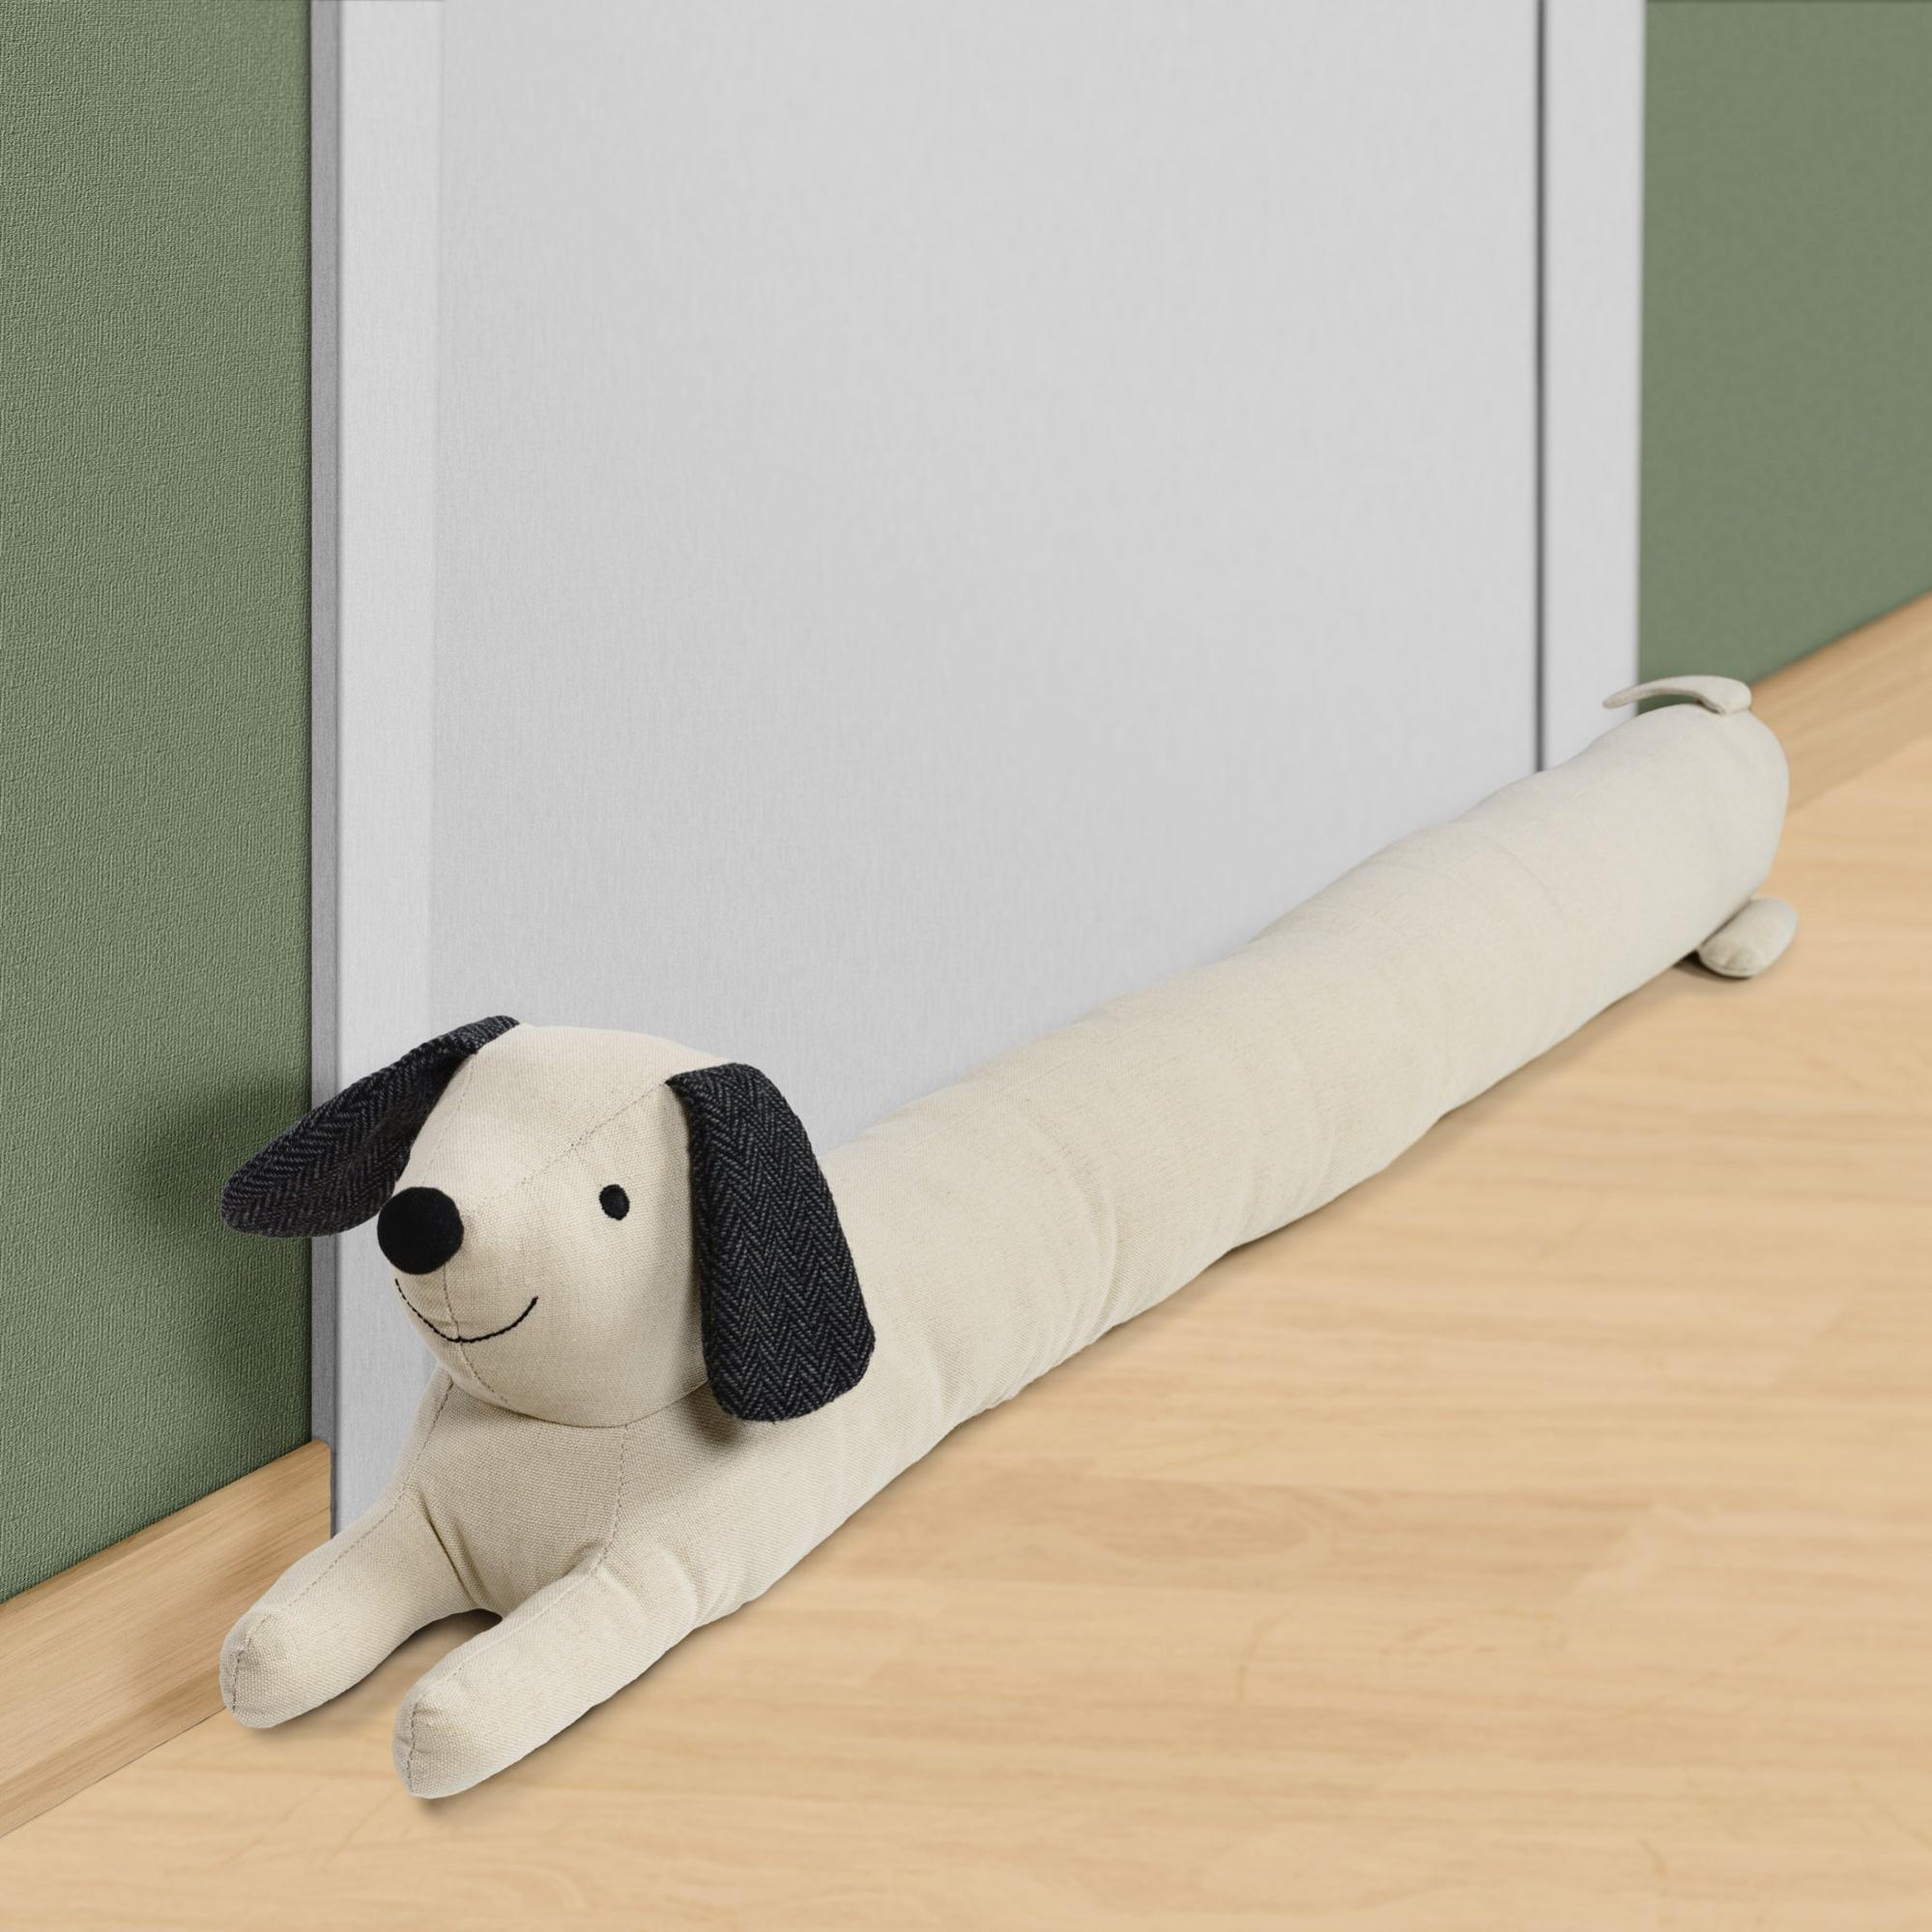 Un bas de porte boudin en forme de chien qui mesure 87 cm environ. On peut  bien sûr le fai…